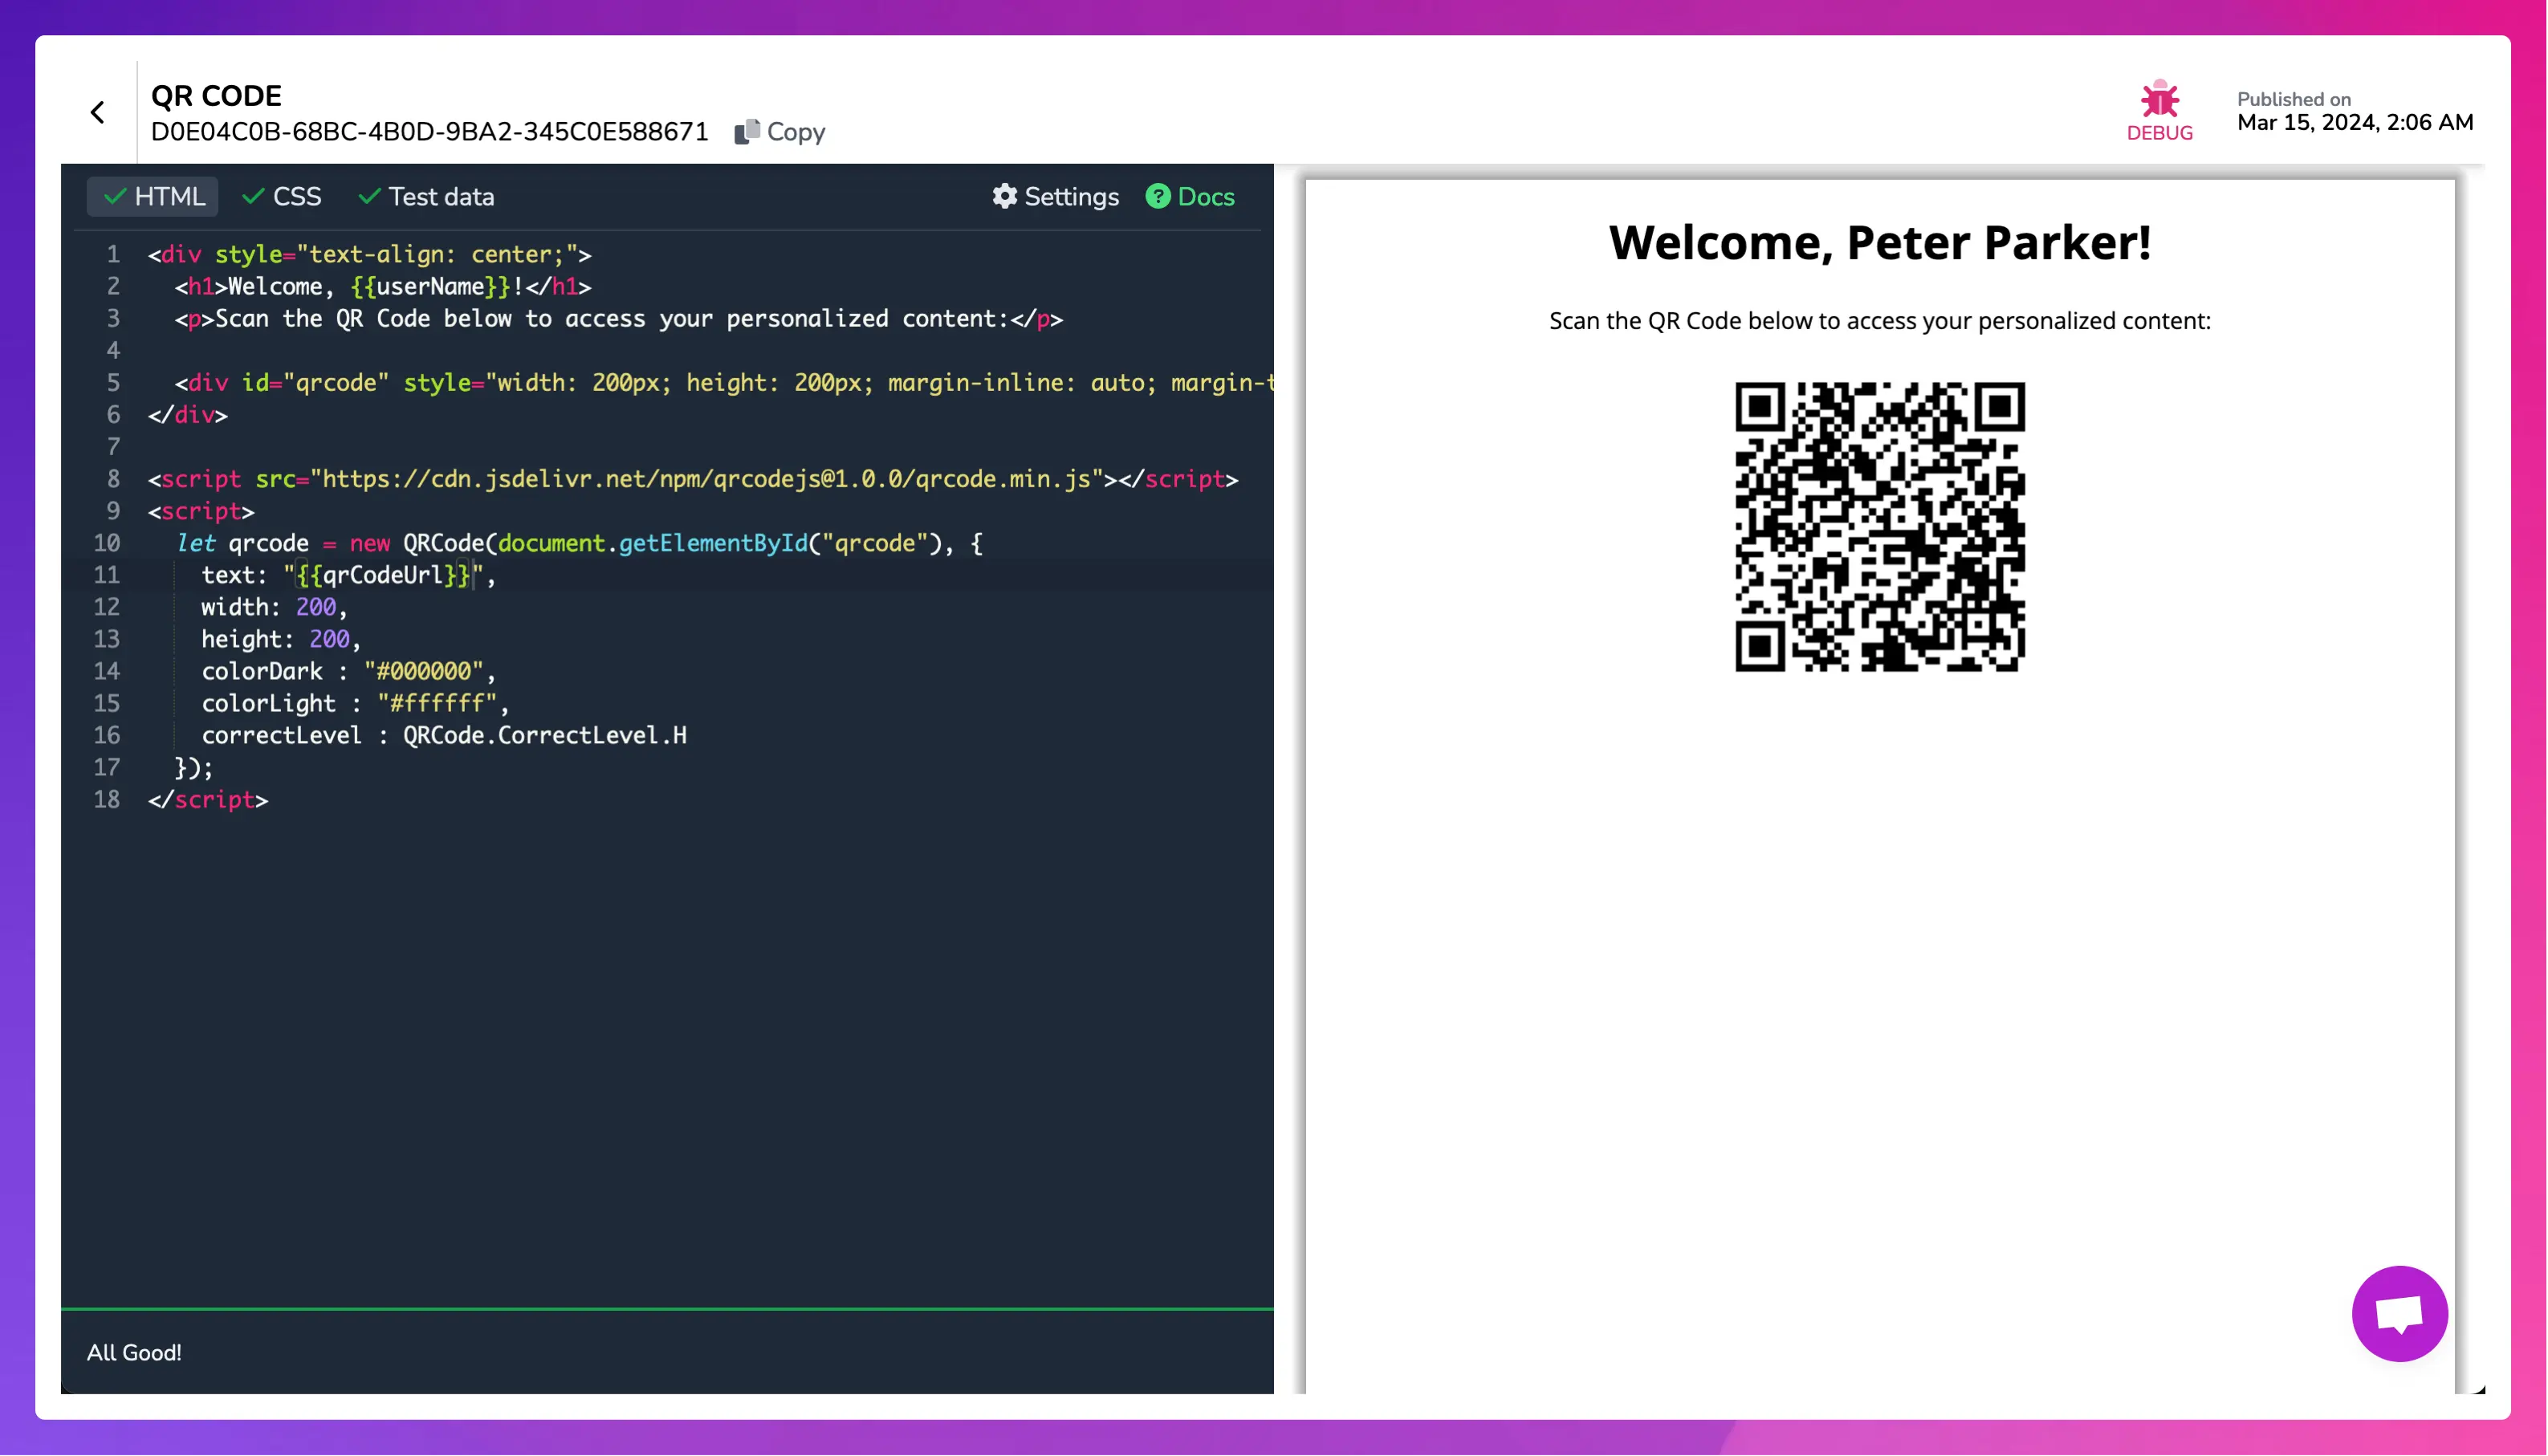 Exemple d'un QR Code contenant l'URL du site de PDFMonkey